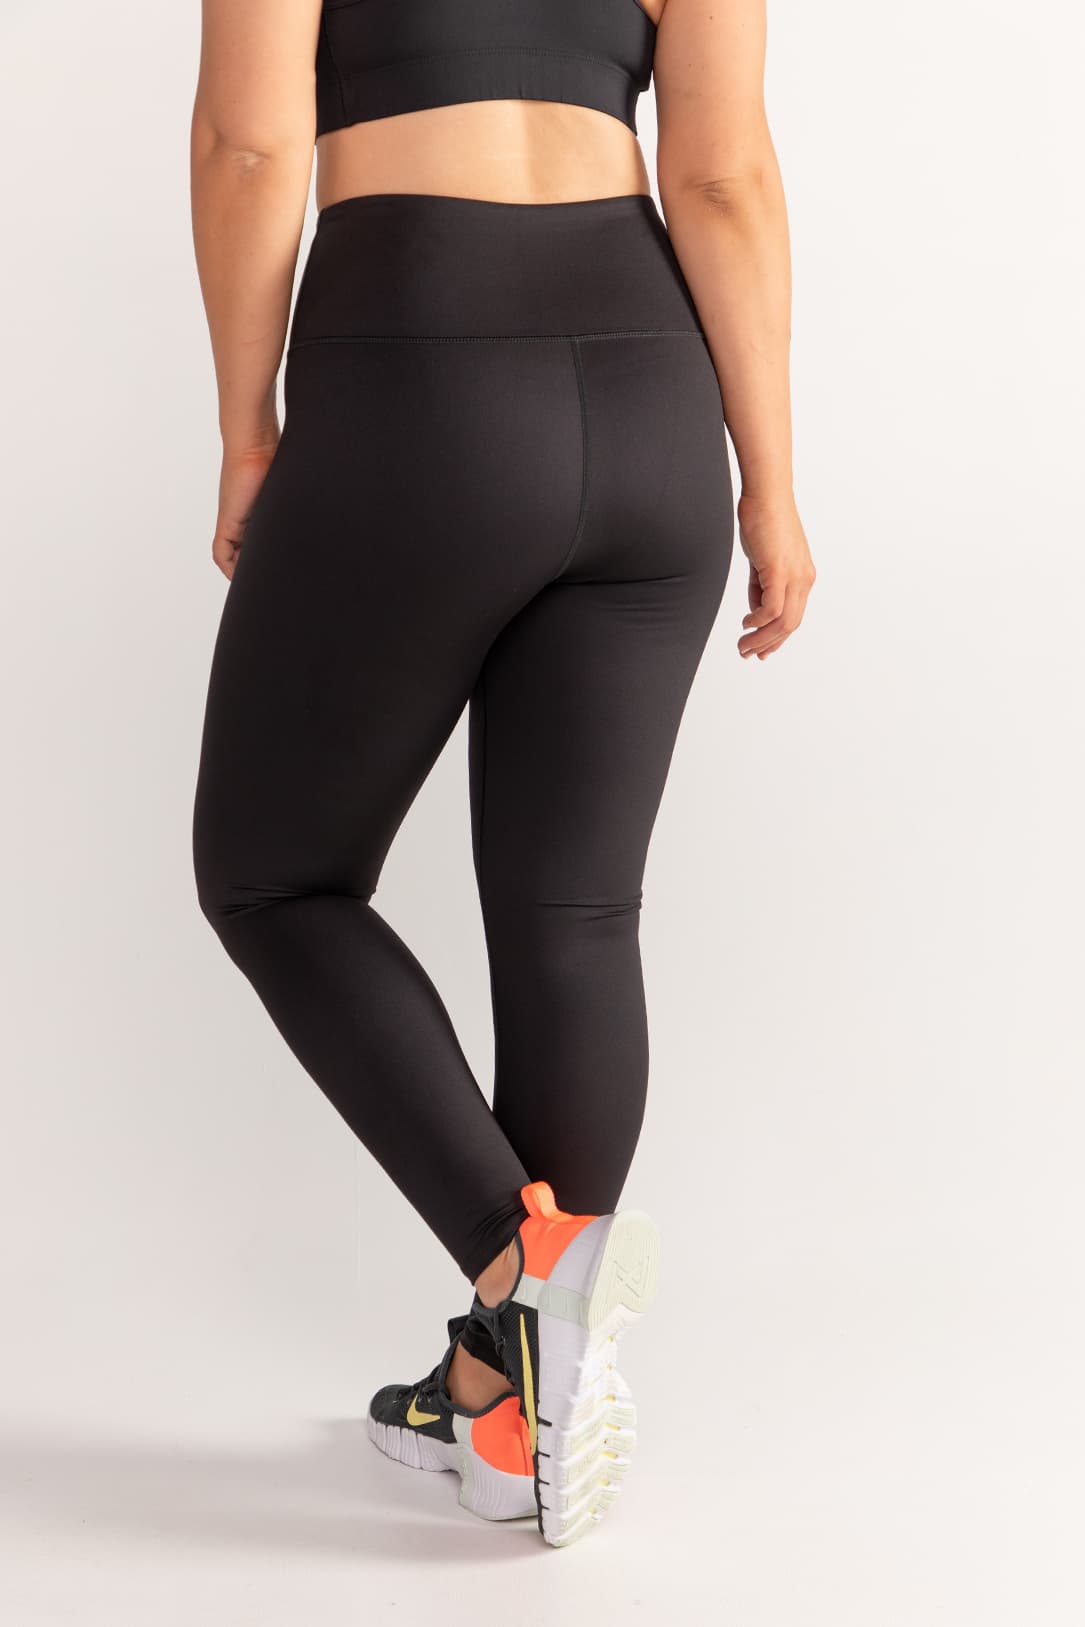 Women's Black Gray Striped Splicing Yoga Fitness Activewear Leggings |  Fitness activewear, Active wear leggings, Active wear pants